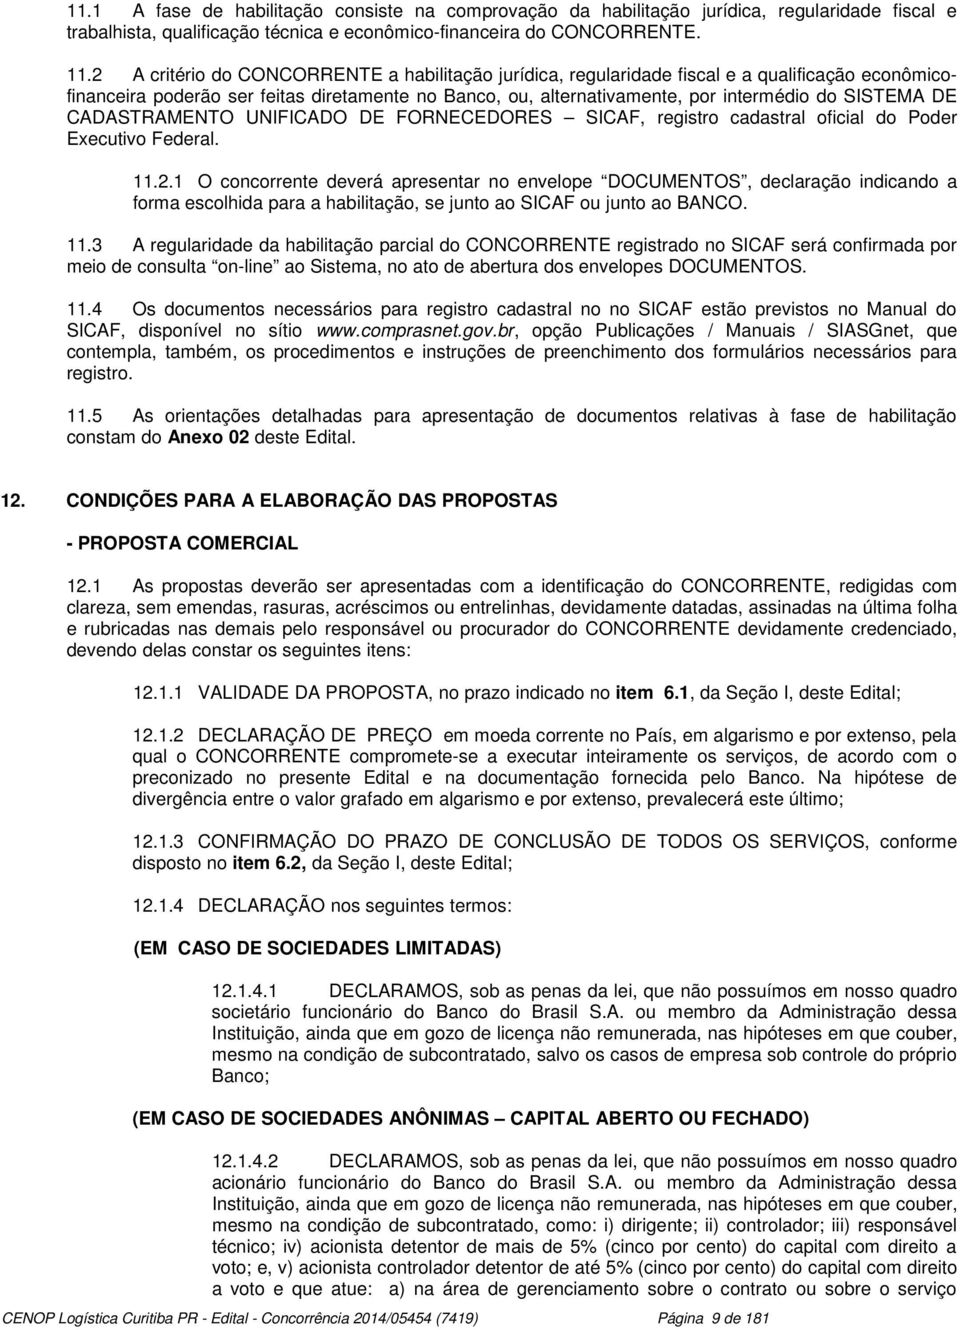 DE CADASTRAMENTO UNIFICADO DE FORNECEDORES SICAF, registro cadastral oficial do Poder Executivo Federal.